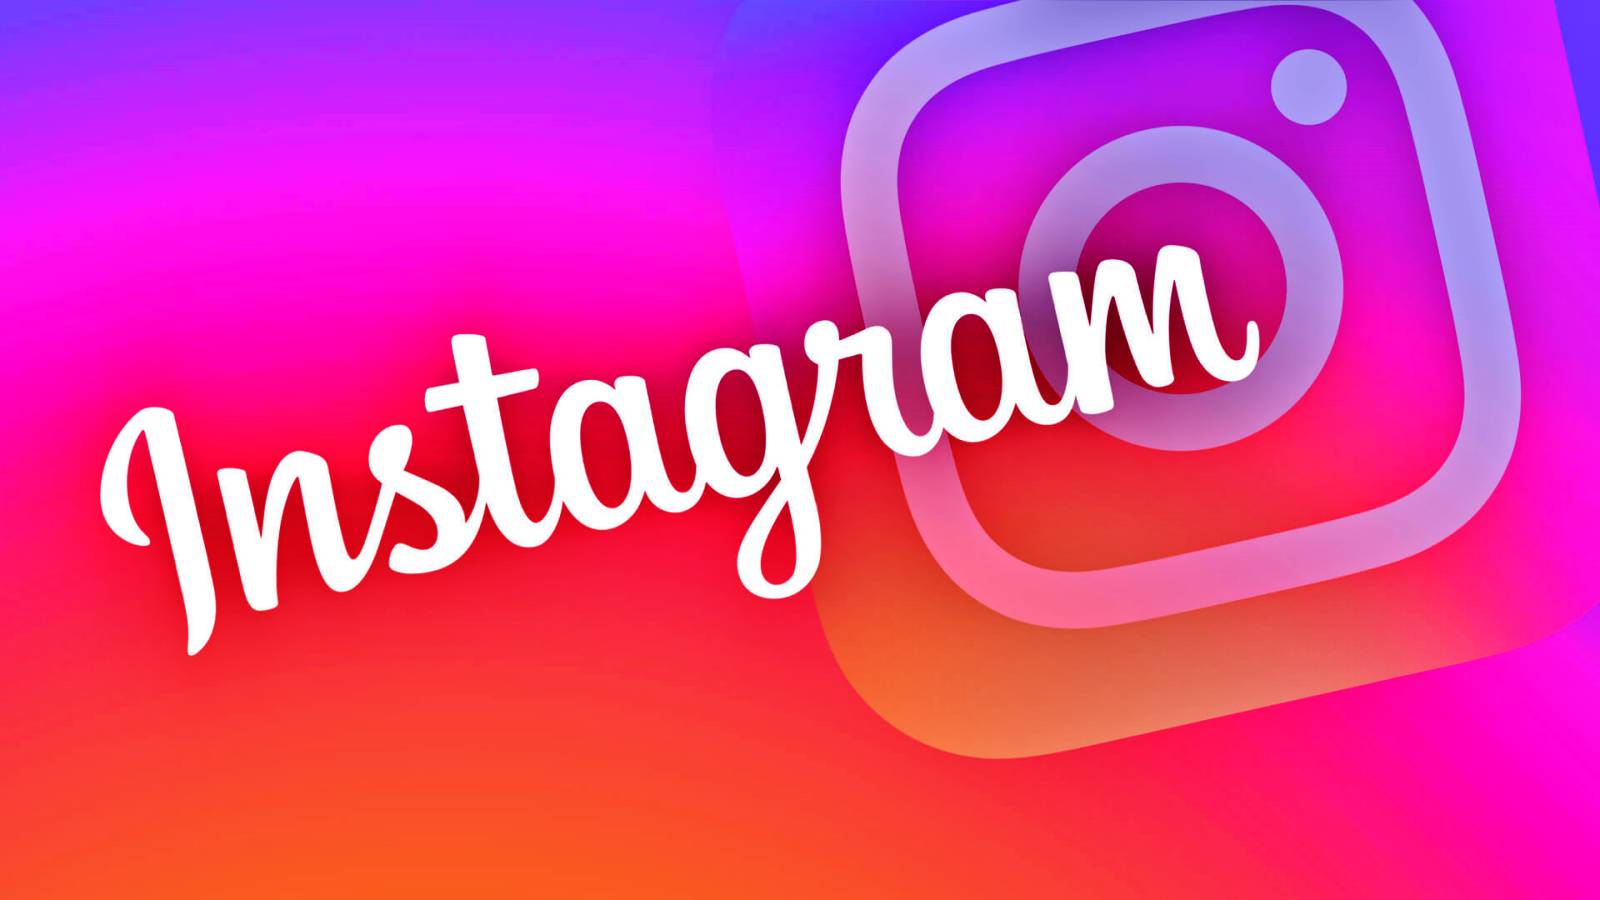 Instagram Update brengt nieuws voor telefoons, welke veranderingen worden aangeboden